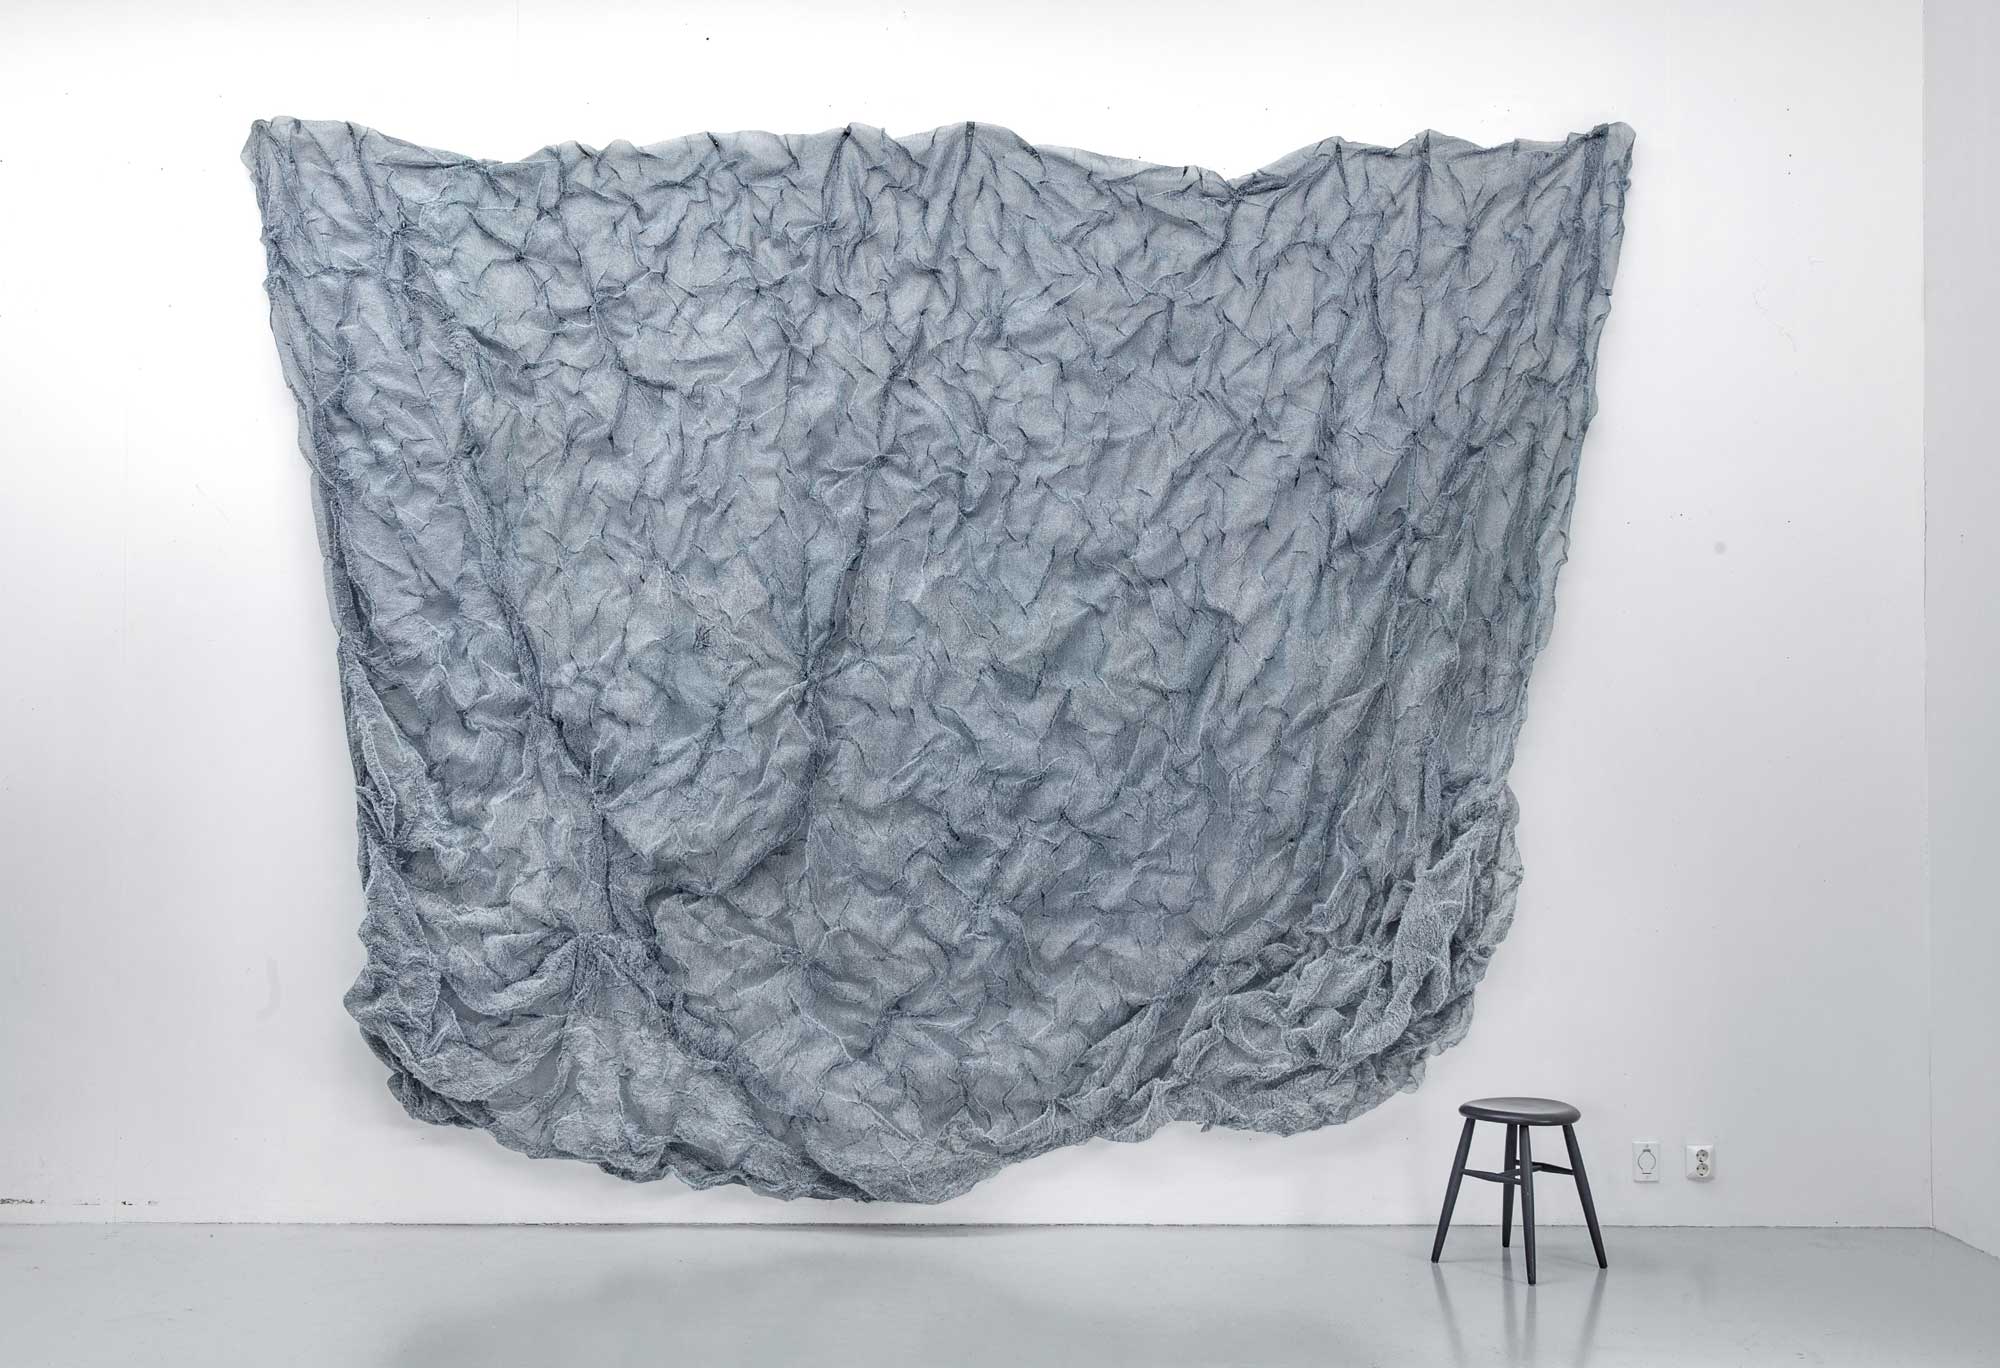 Kari Hjertholm - A transparent fall
- Tufté. Fil cousu et moustiquaire - 430 x 26 x 338 cm - 2020 - Photo : Jan M. Lillebø